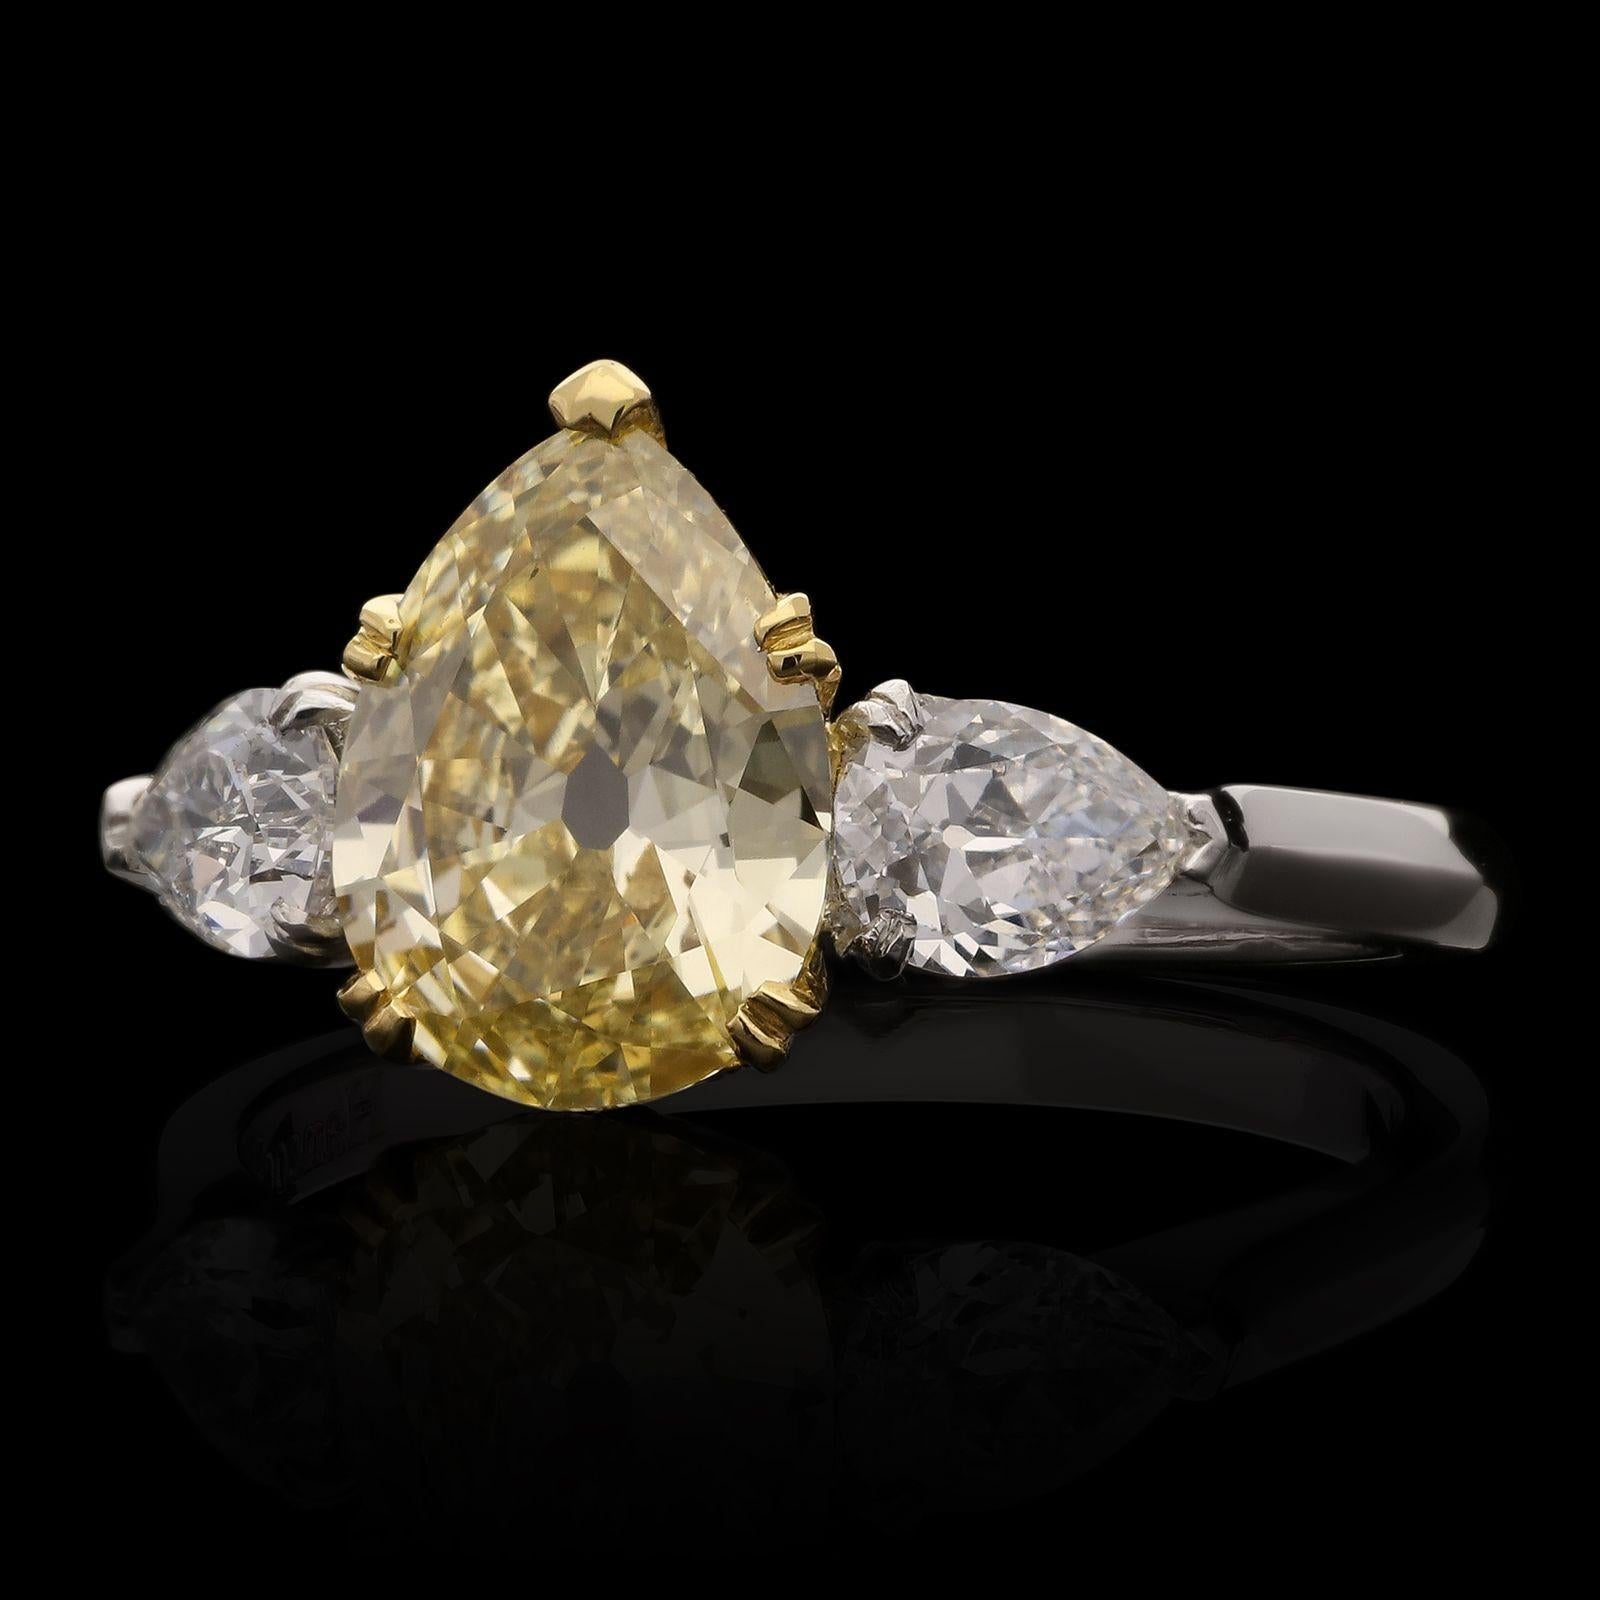 Magnifique bague en diamant de couleur fantaisie de Hancocks, sertie d'un diamant poire de taille ancienne pesant 1,49ct, de couleur jaune fantaisie et de pureté VS2, dans une monture en or jaune 18ct à deux griffes entre des épaules de diamants en